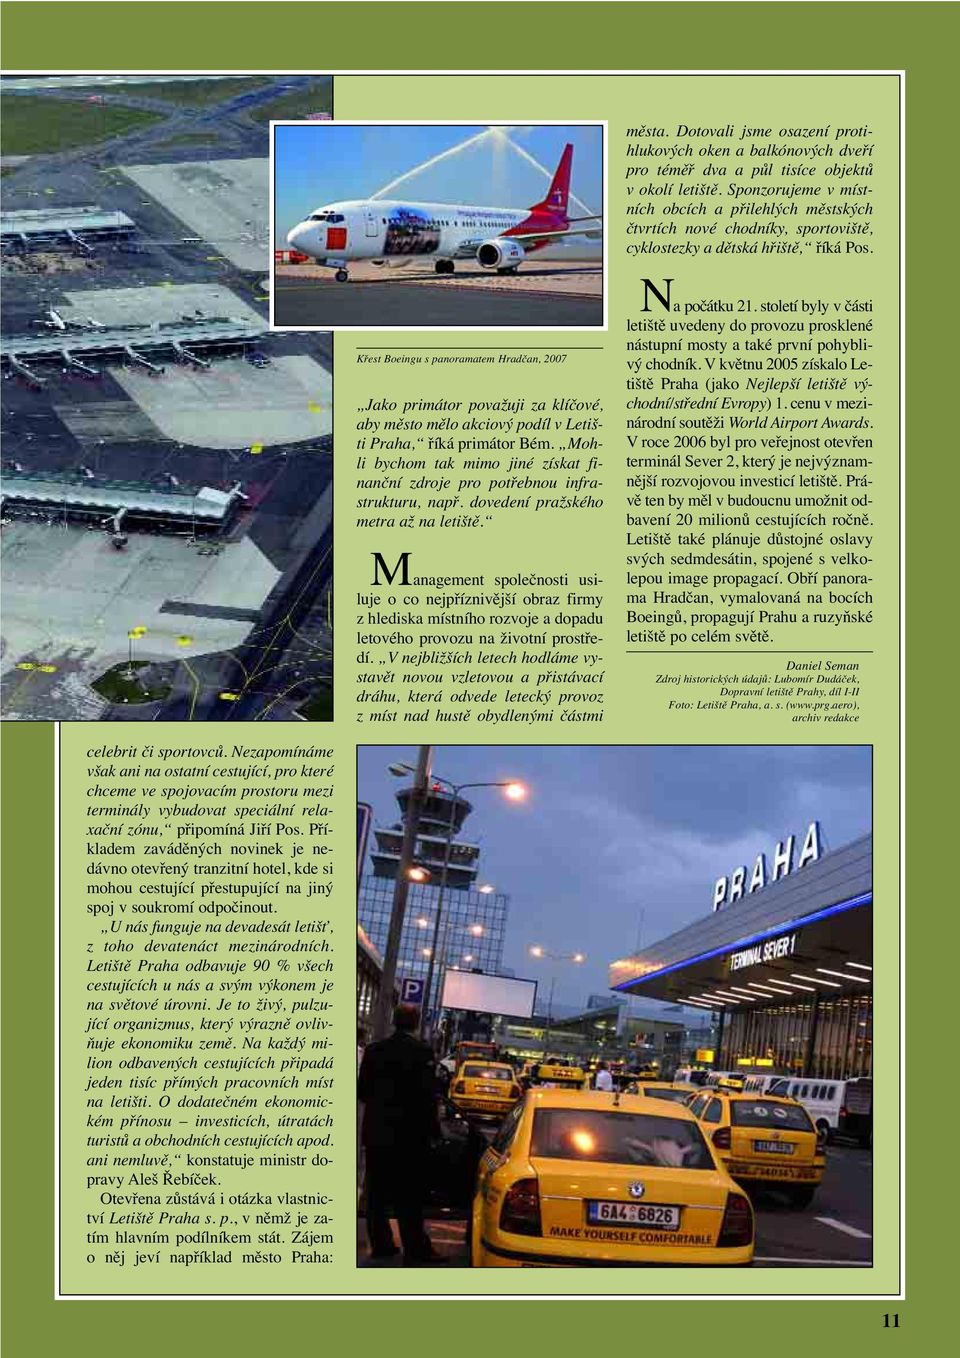 Křest Boeingu s panoramatem Hradčan, 2007 Jako primátor považuji za klíčové, aby město mělo akciový podíl v Letišti Praha, říká primátor Bém.